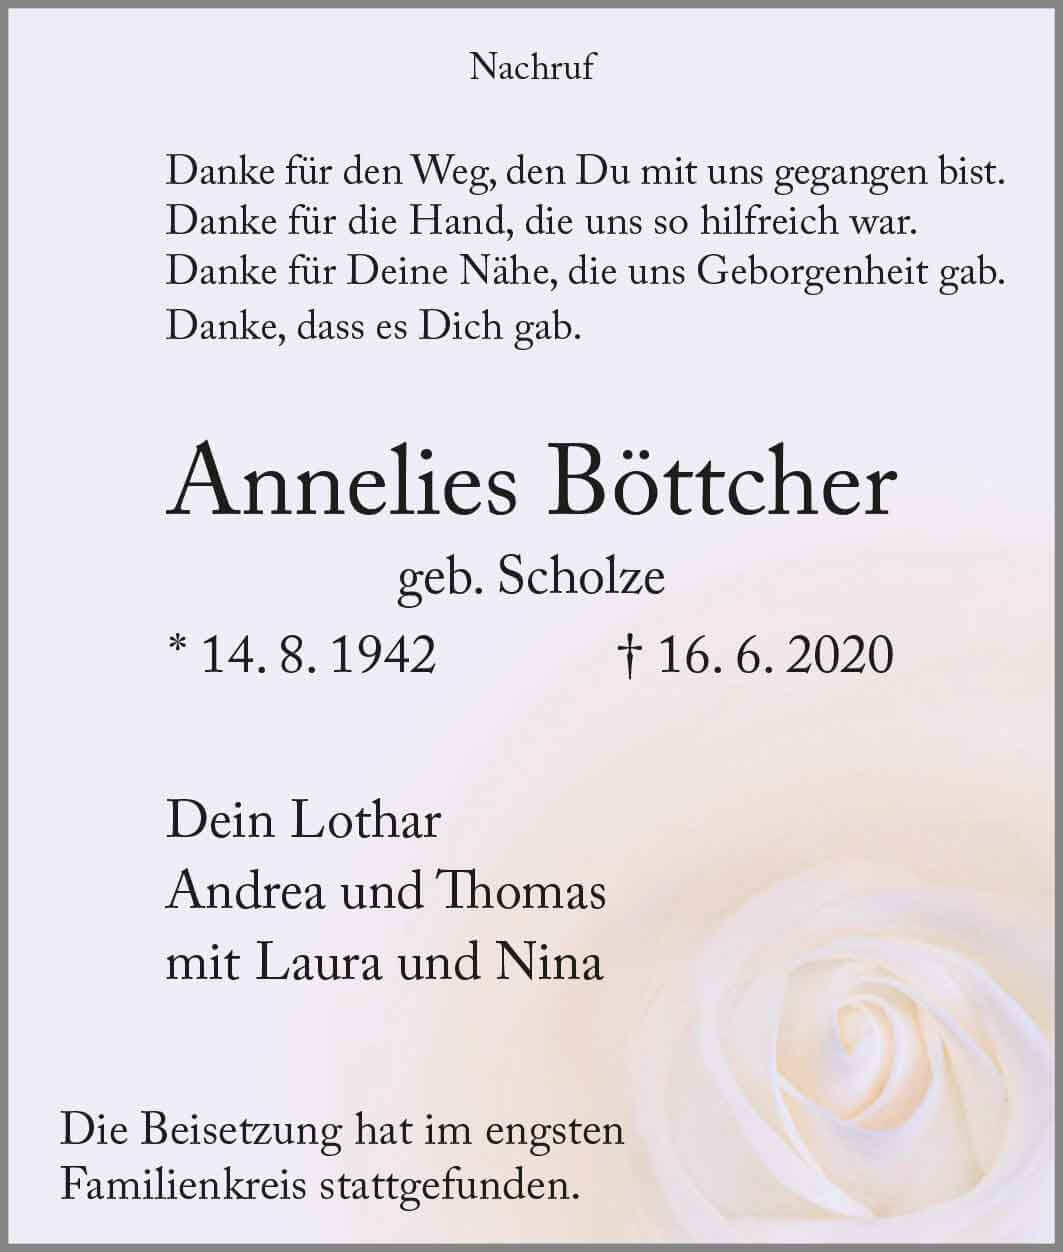 Anneliese Böttcher † 16. 6. 2020